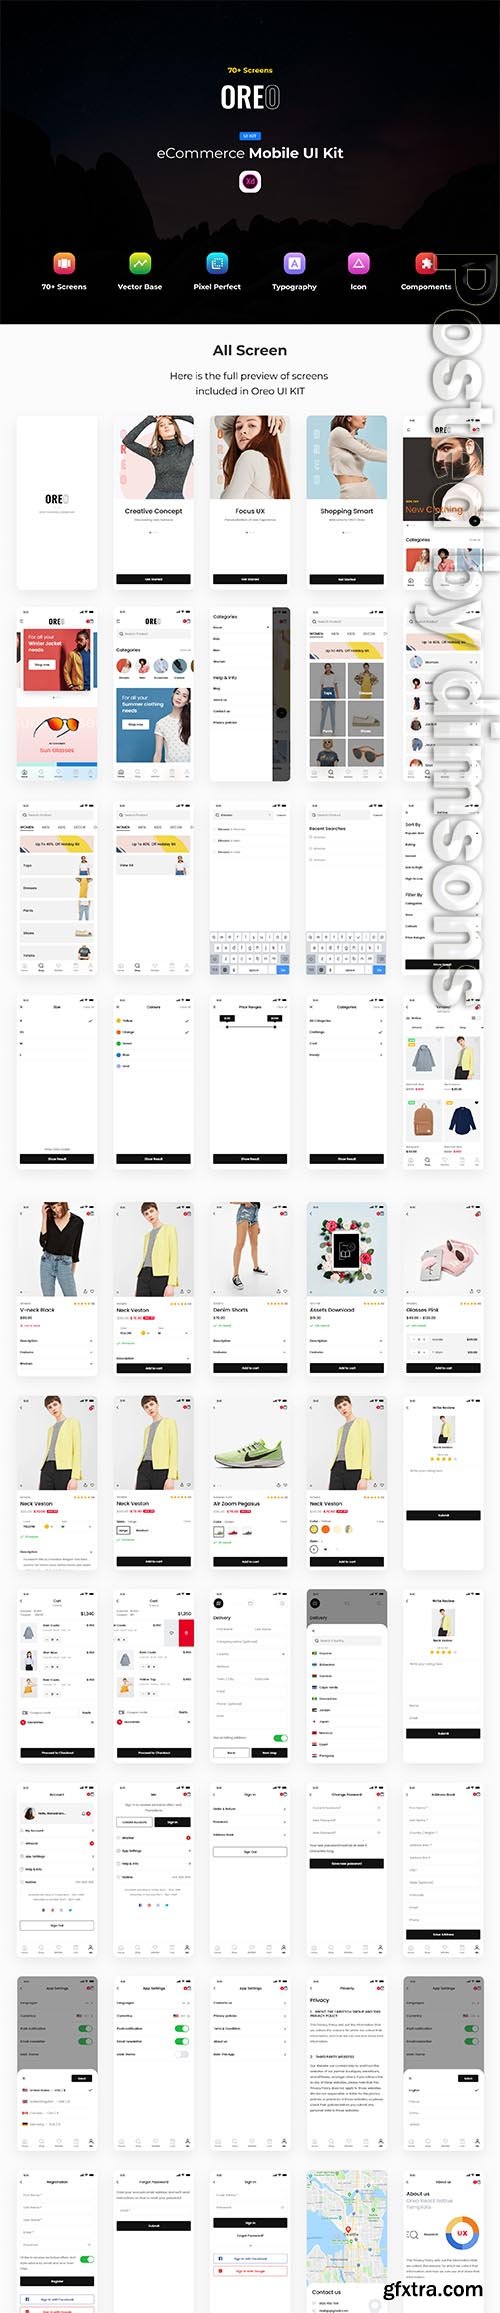 Oreo eCommerce Mobile UI Kit